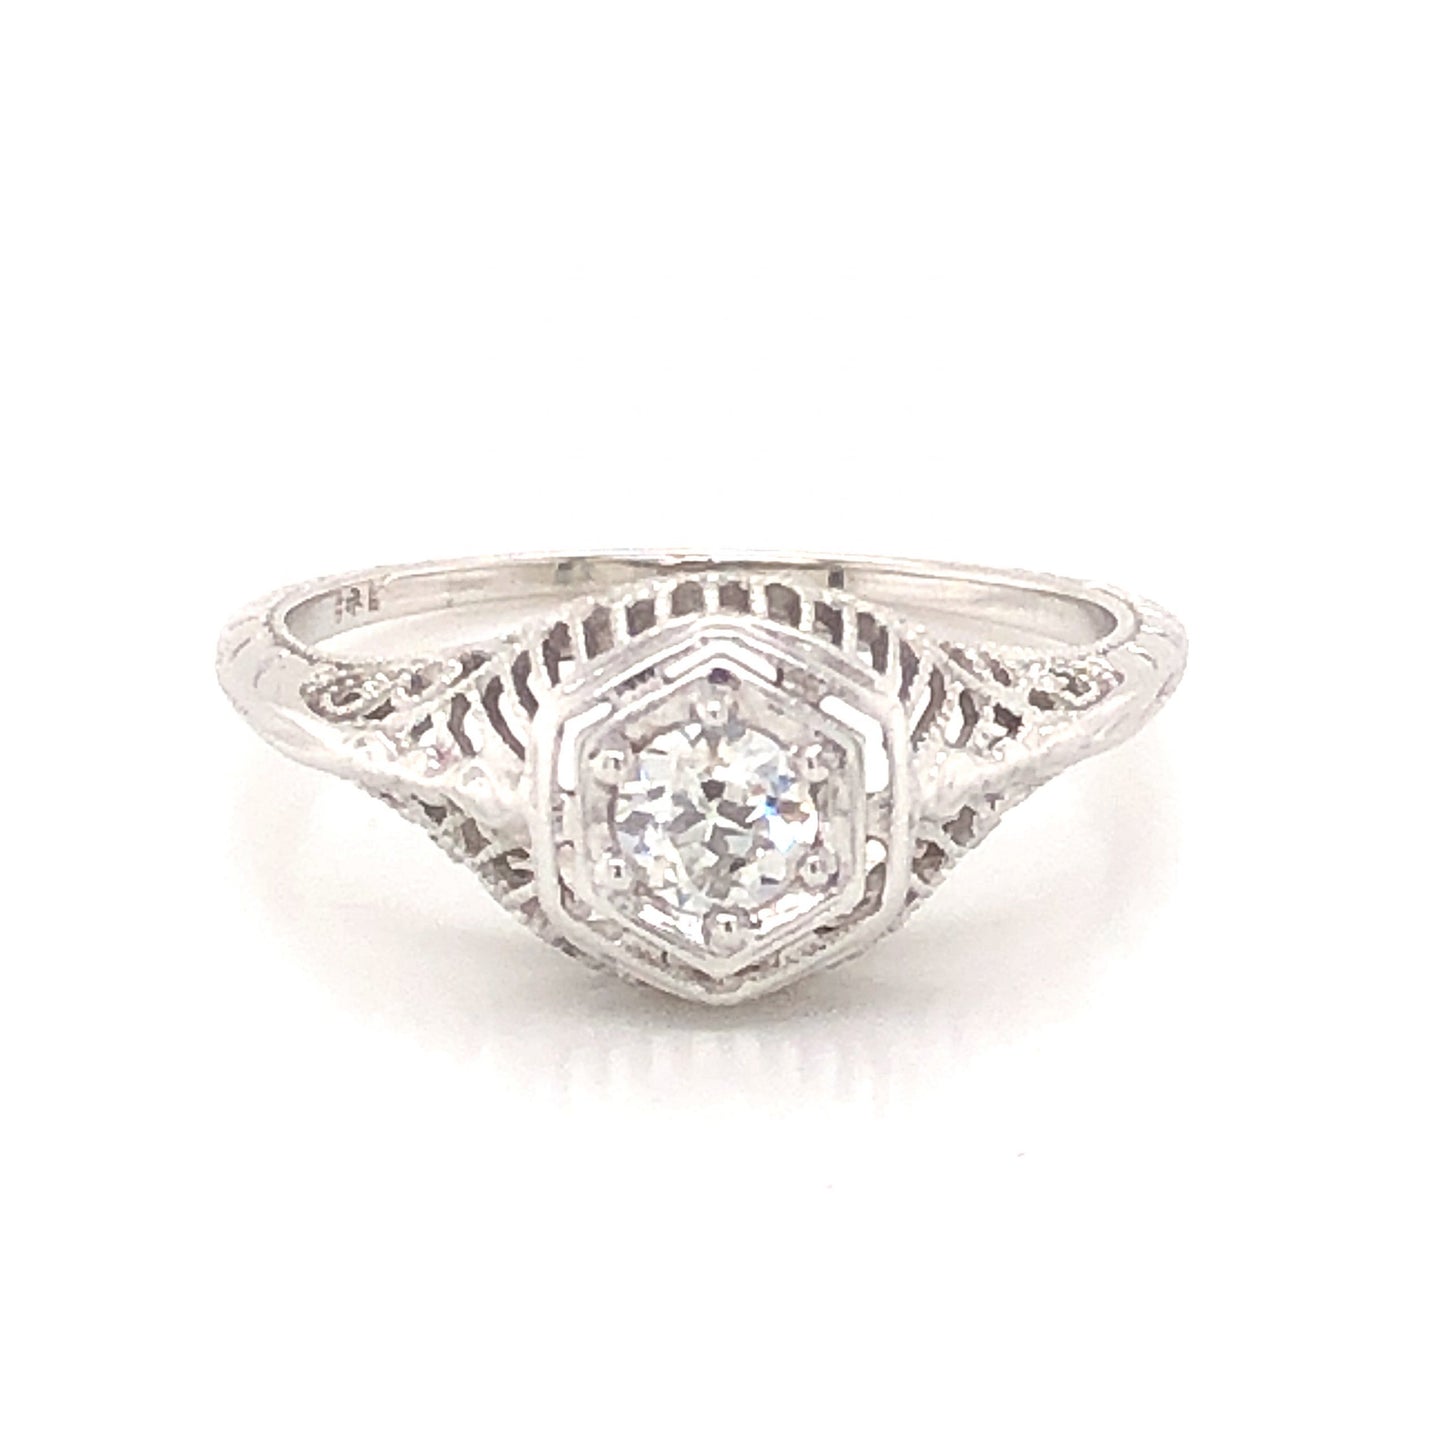 .20 Art Deco Diamond Engagement Ring in 18K White Gold